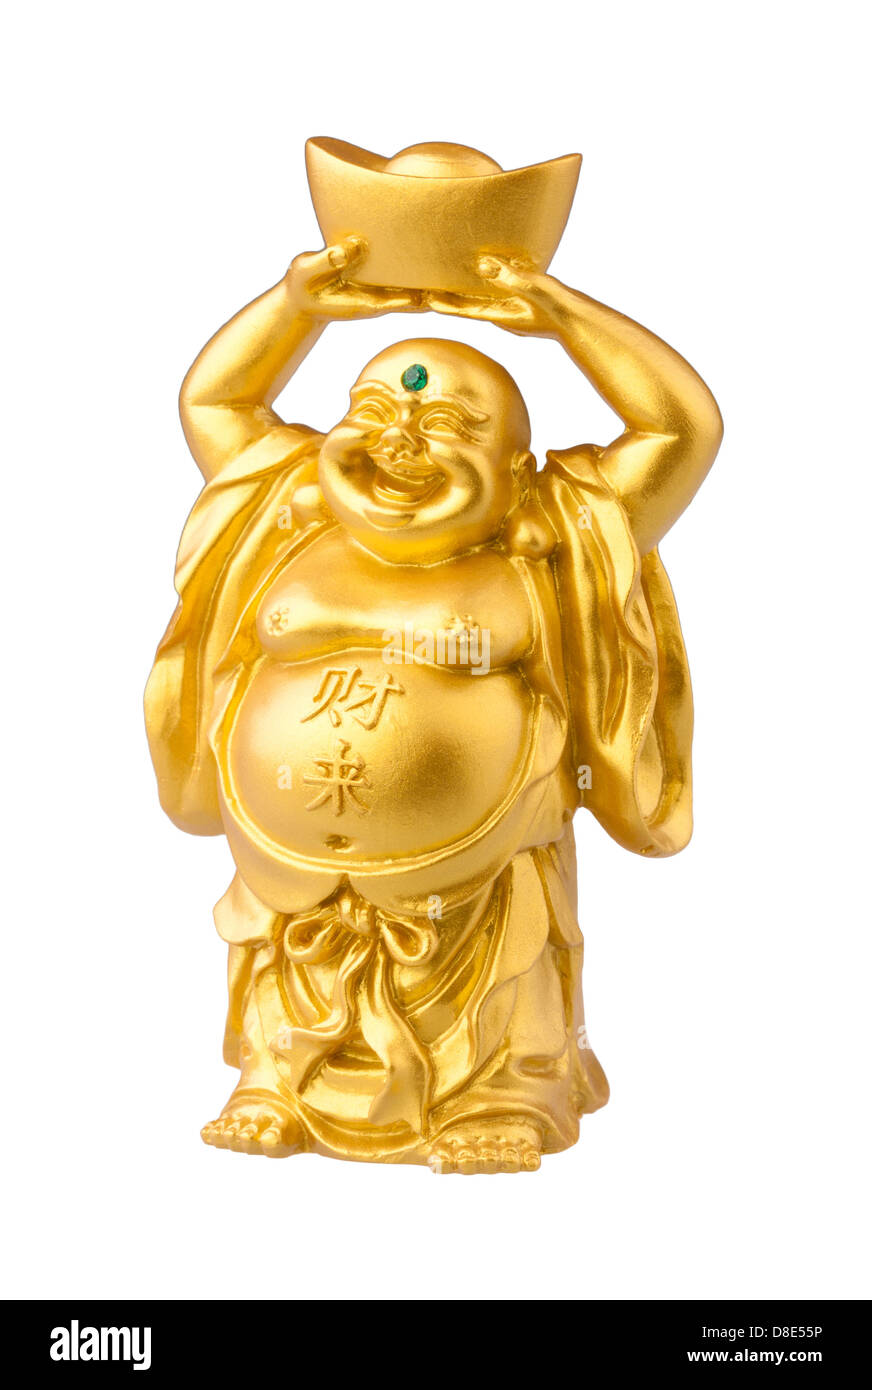 Lächeln Sie, fat Buddha-Statue auf weißem Hintergrund Stockfoto